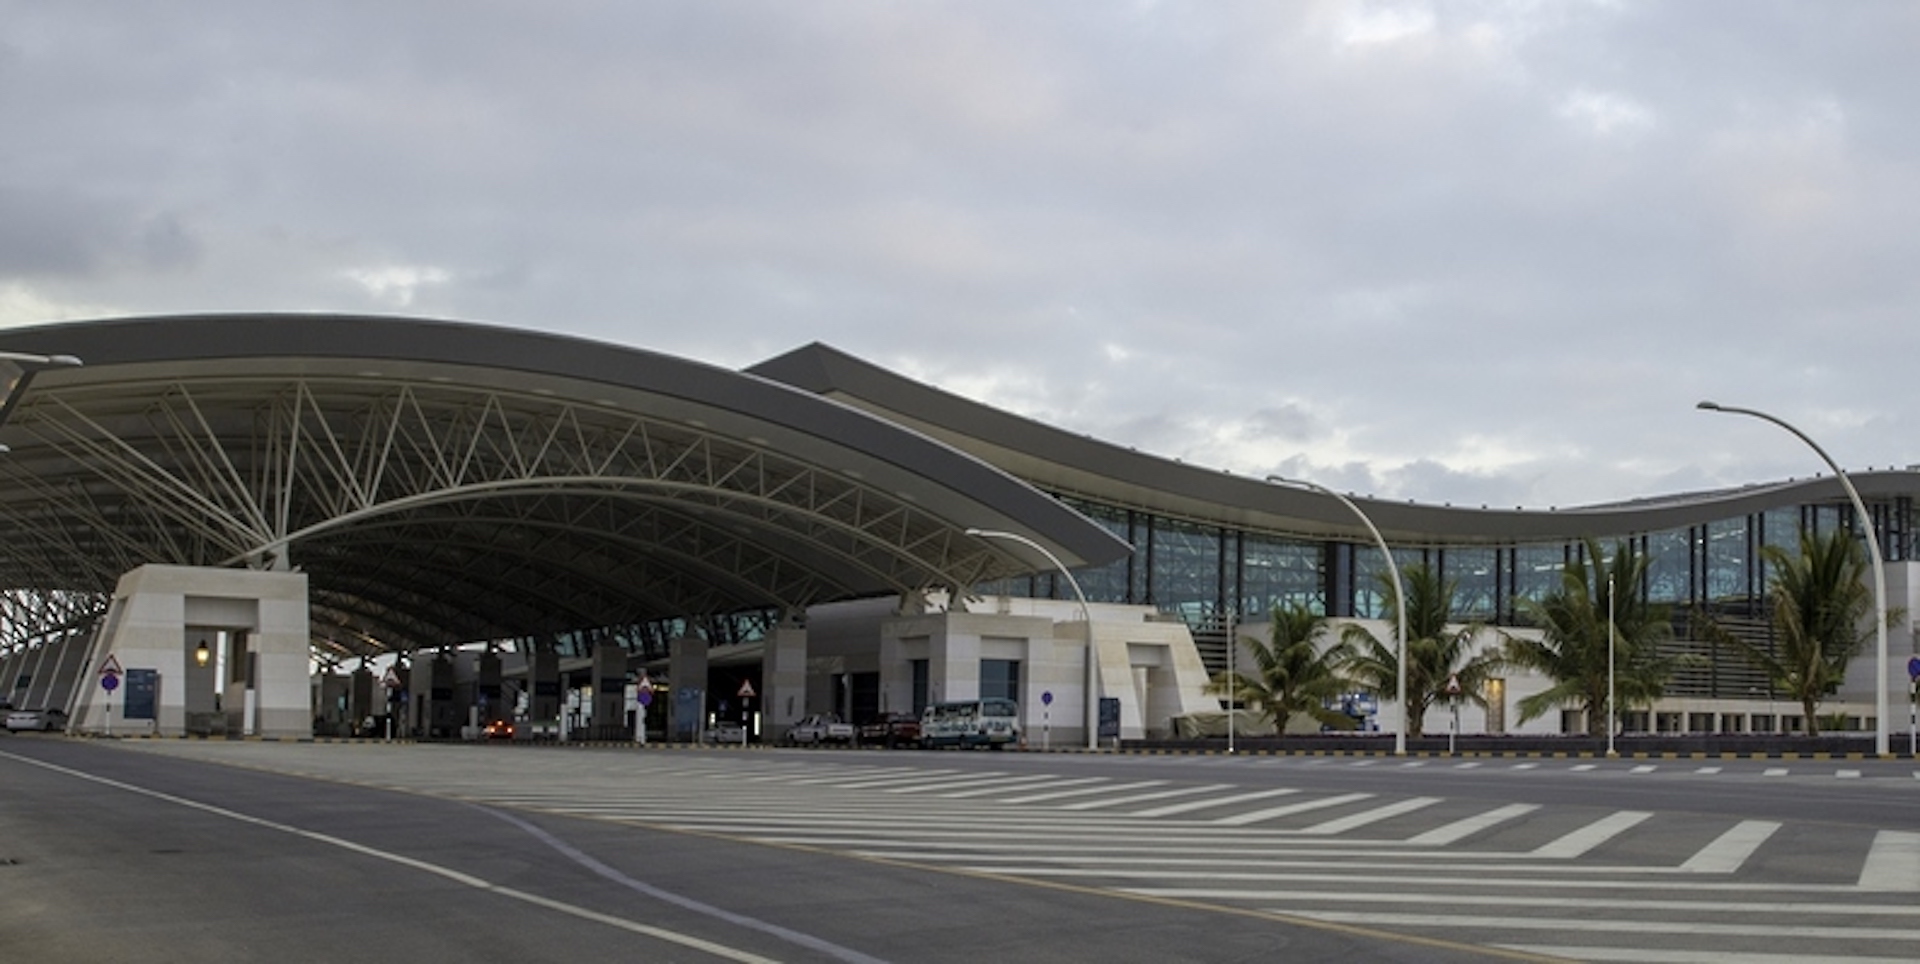 Salalah Airport receives two international awards